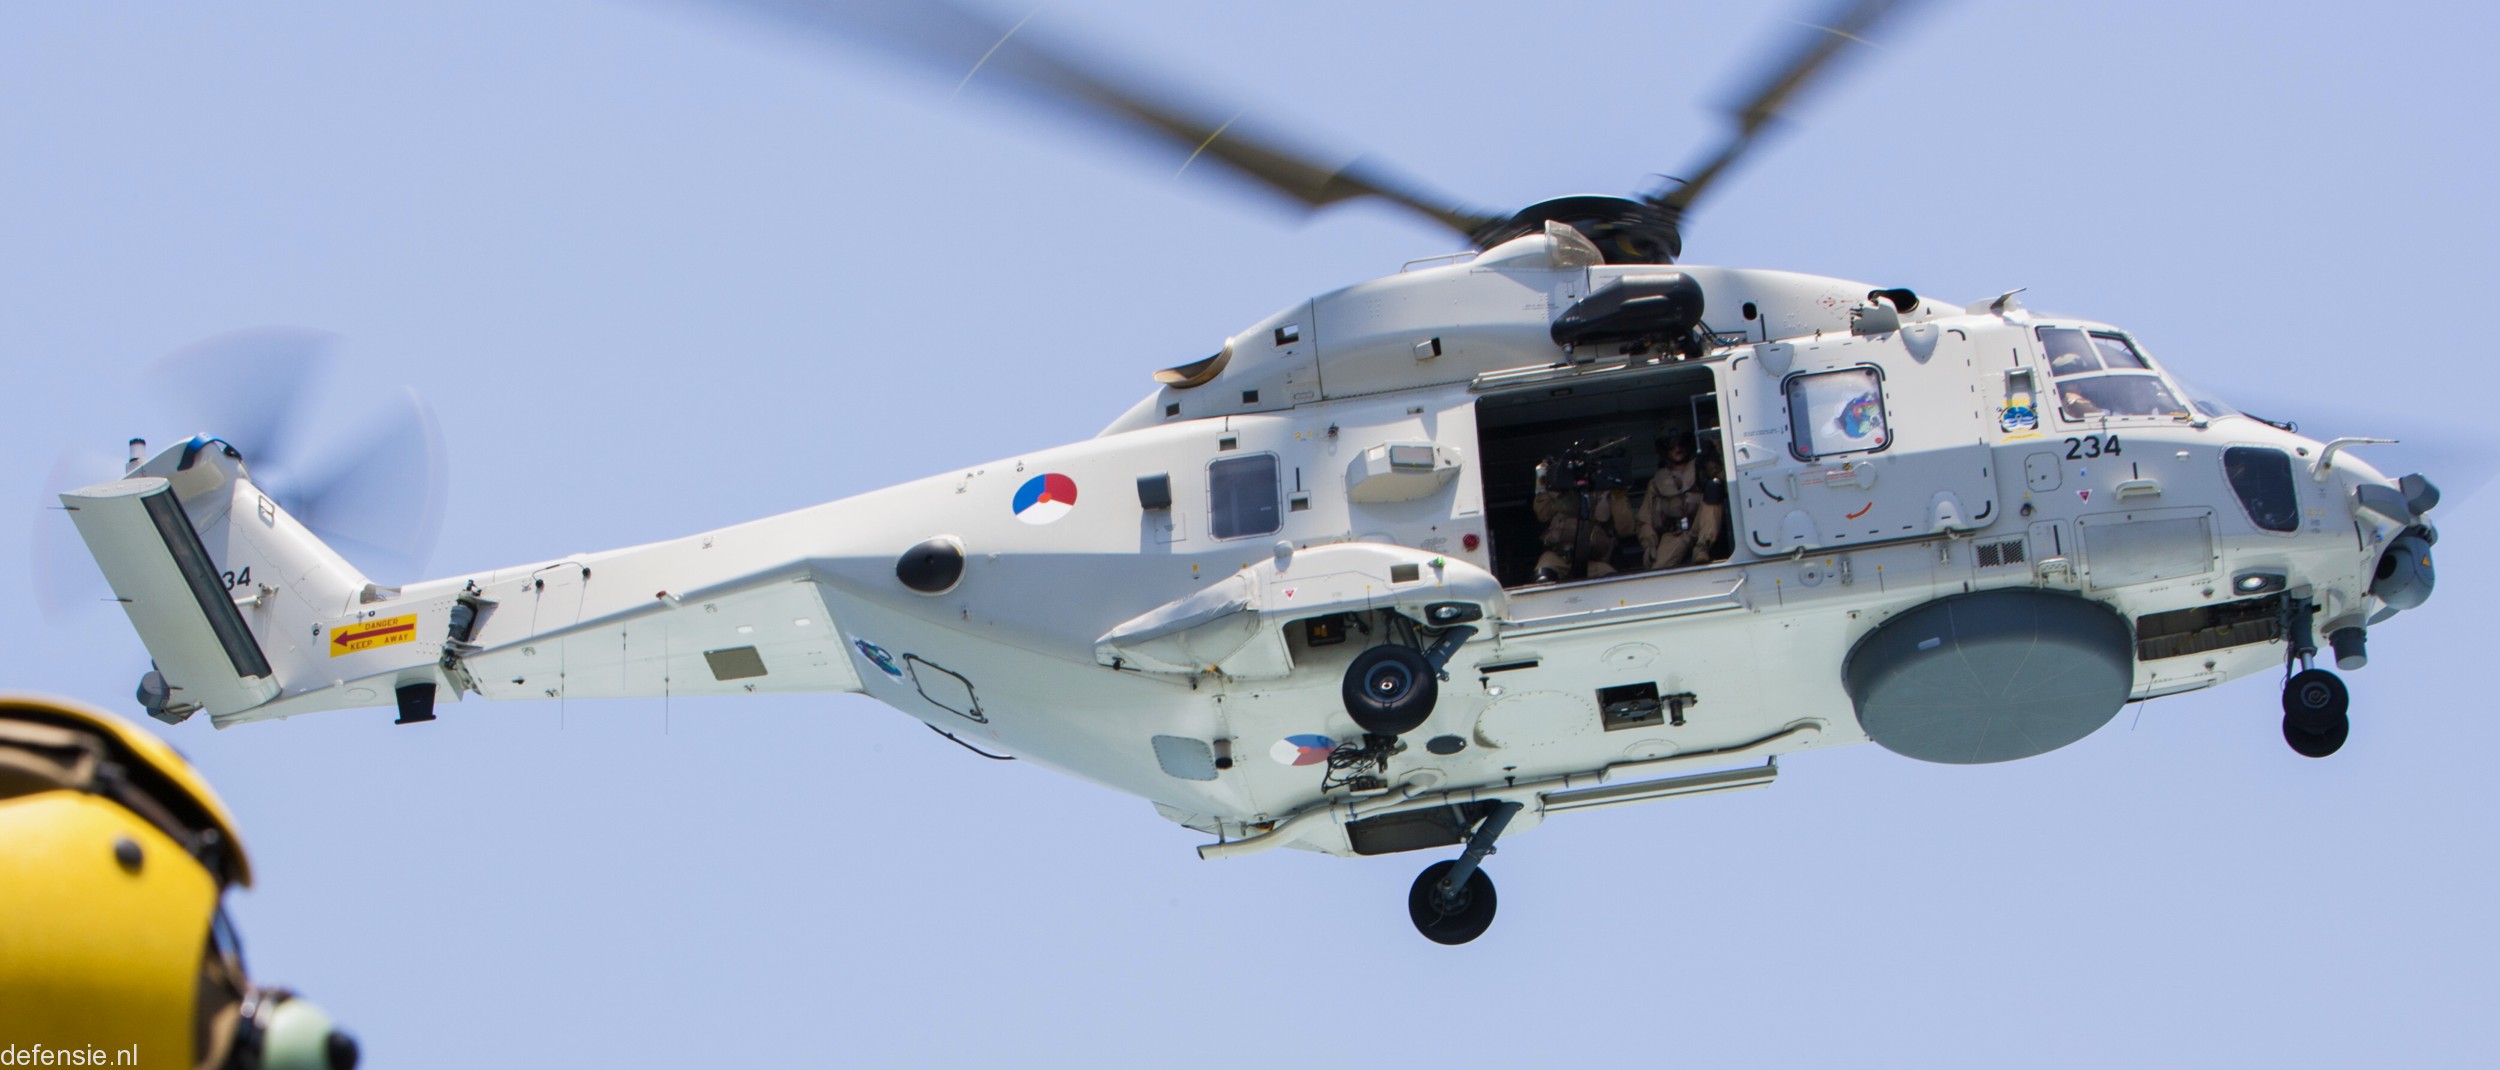 nh90 nfh helicopter royal netherlands navy koninklijke marine n-234 02